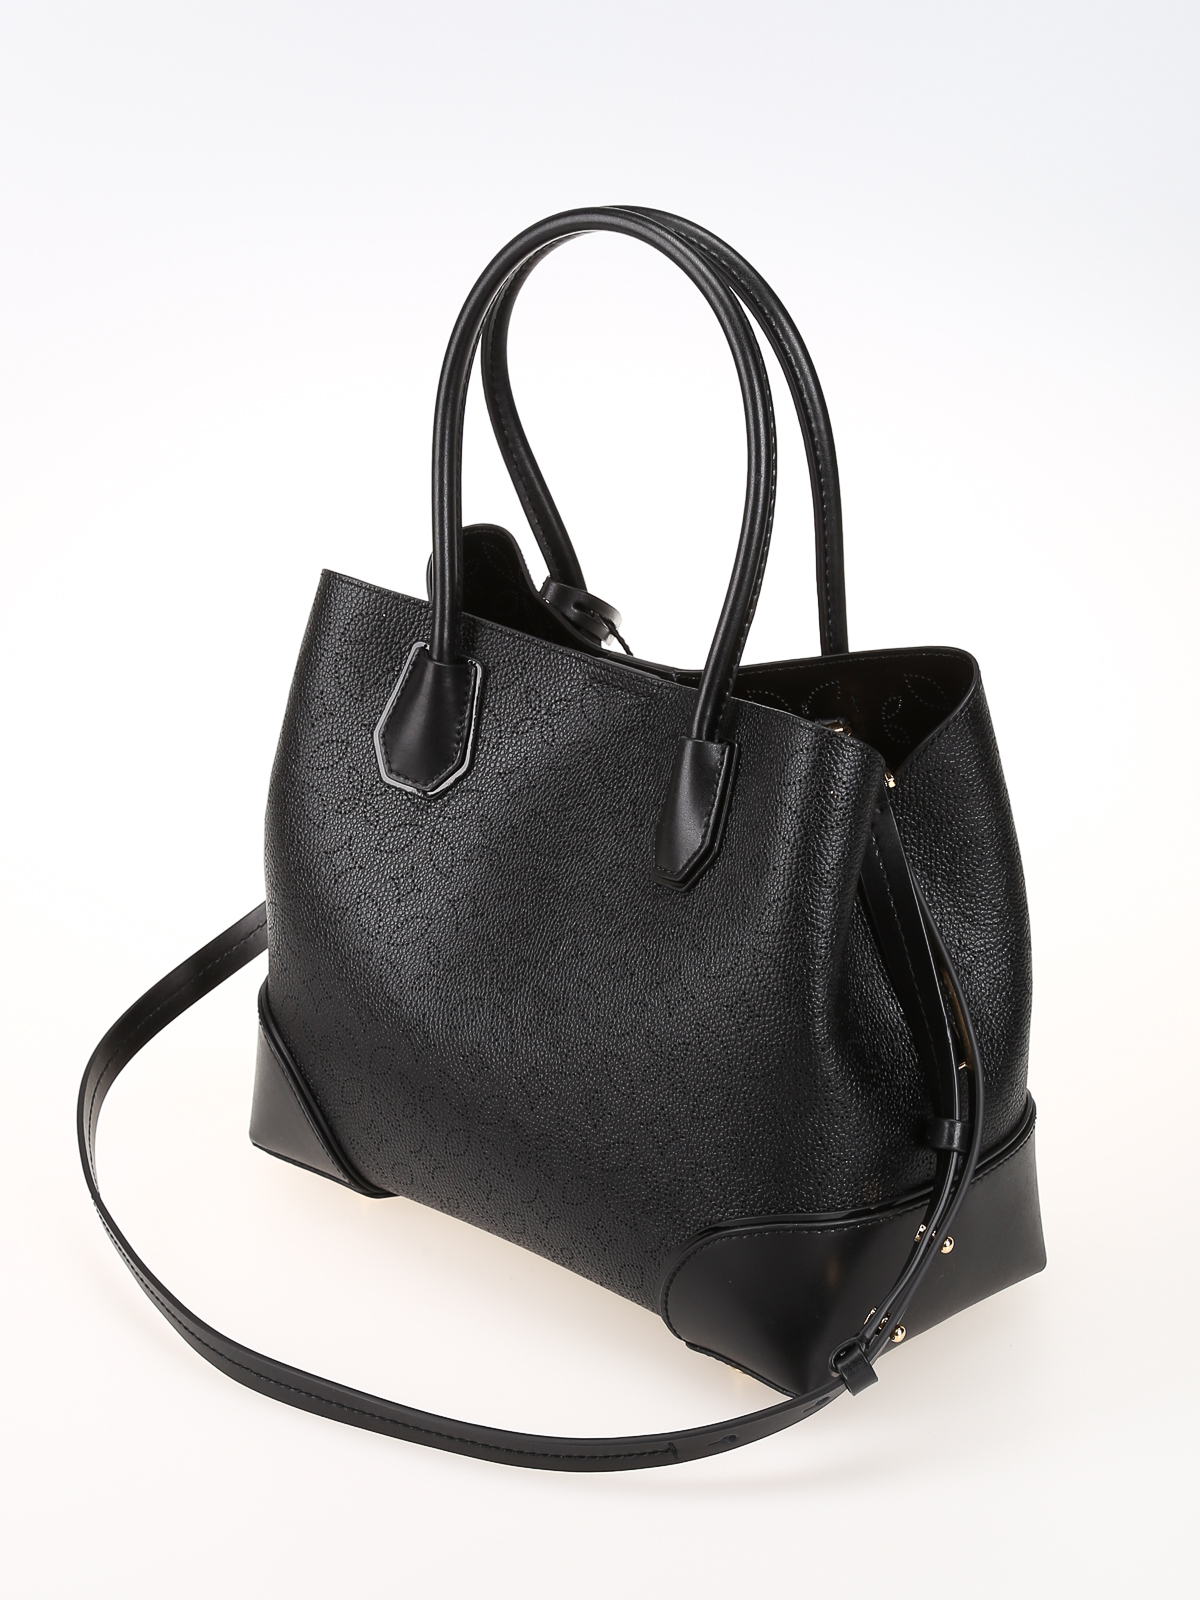 Totes bags Michael Kors - Mercer Gallery small black bag